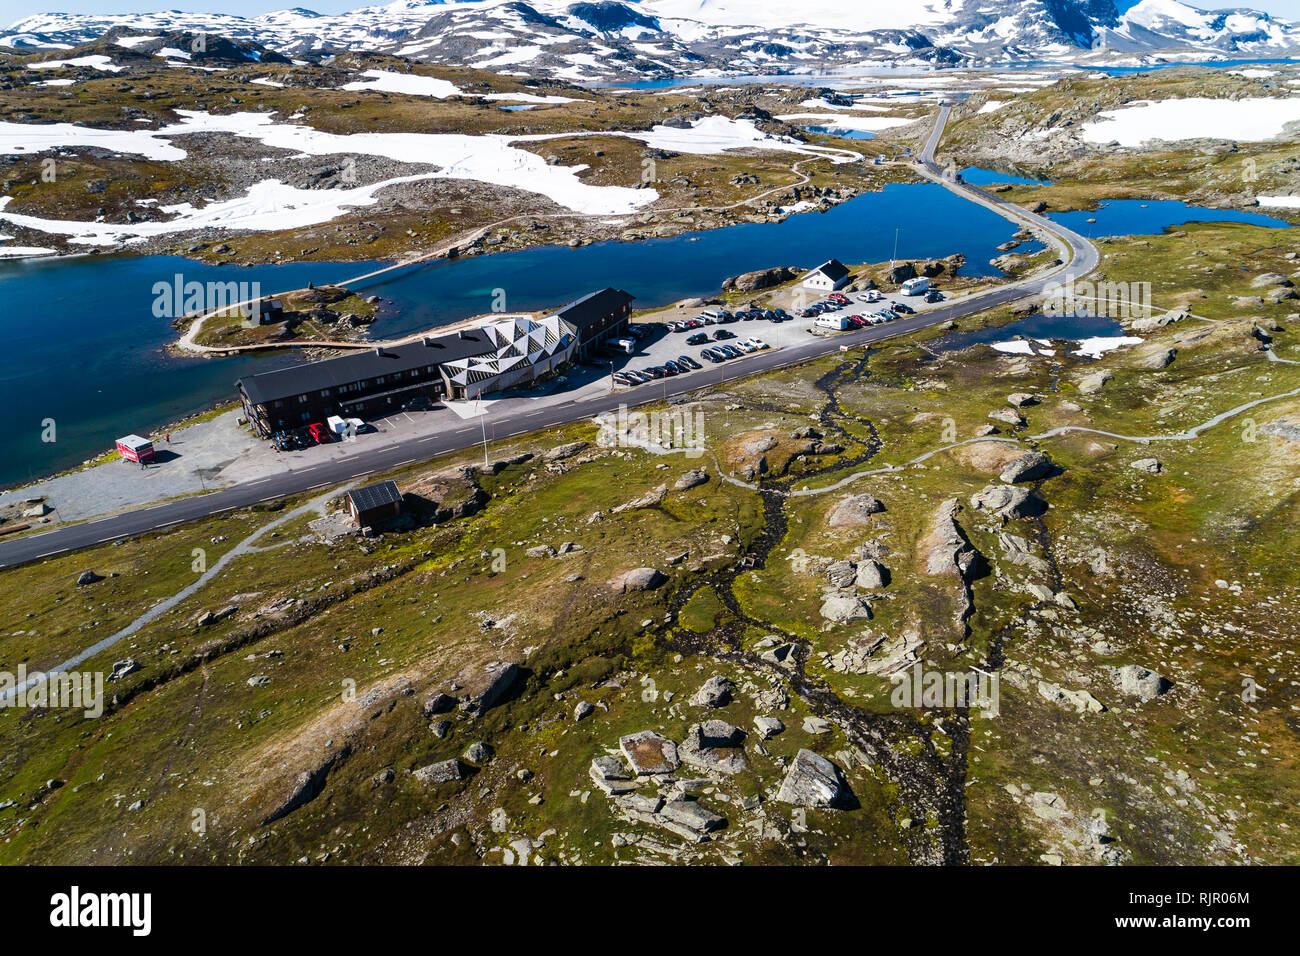 Centre de formation de ski par Lakeside, vue aérienne, Sognefjell, Jotunheimen, Norvège, Europe Banque D'Images